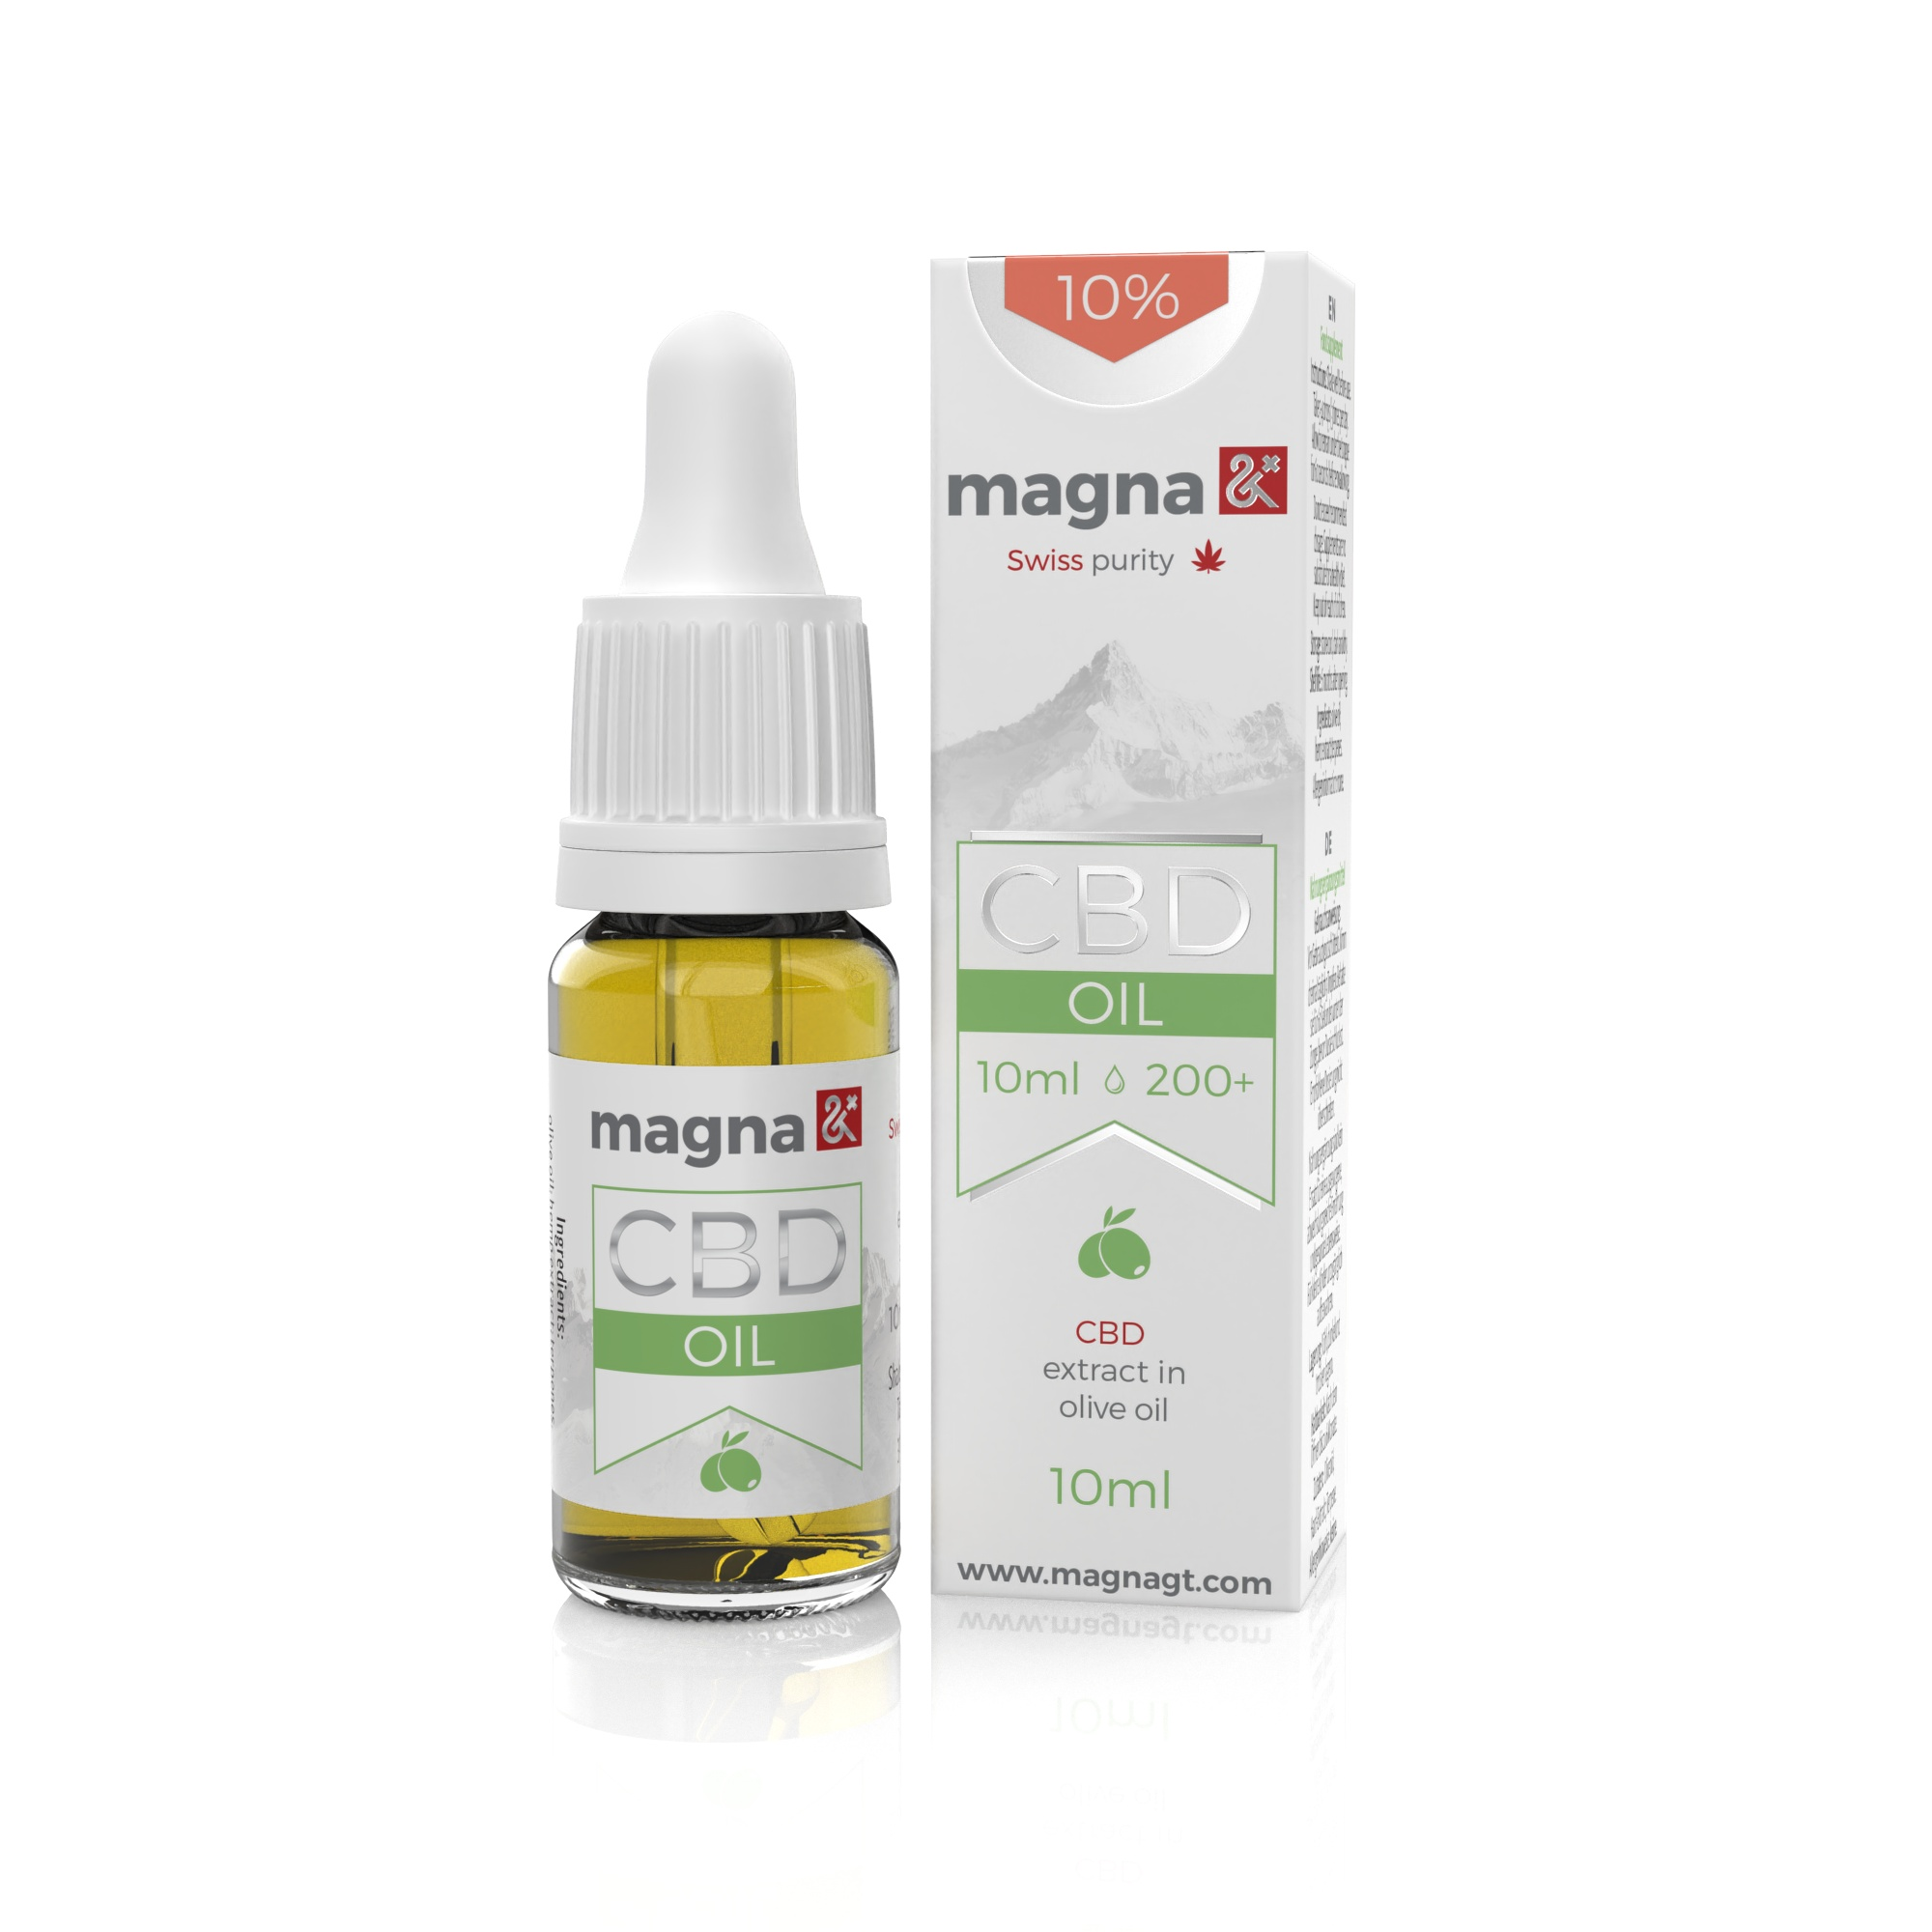 Magna G&T 10% CBD Oil 1000mg | 10ml | in olive oil